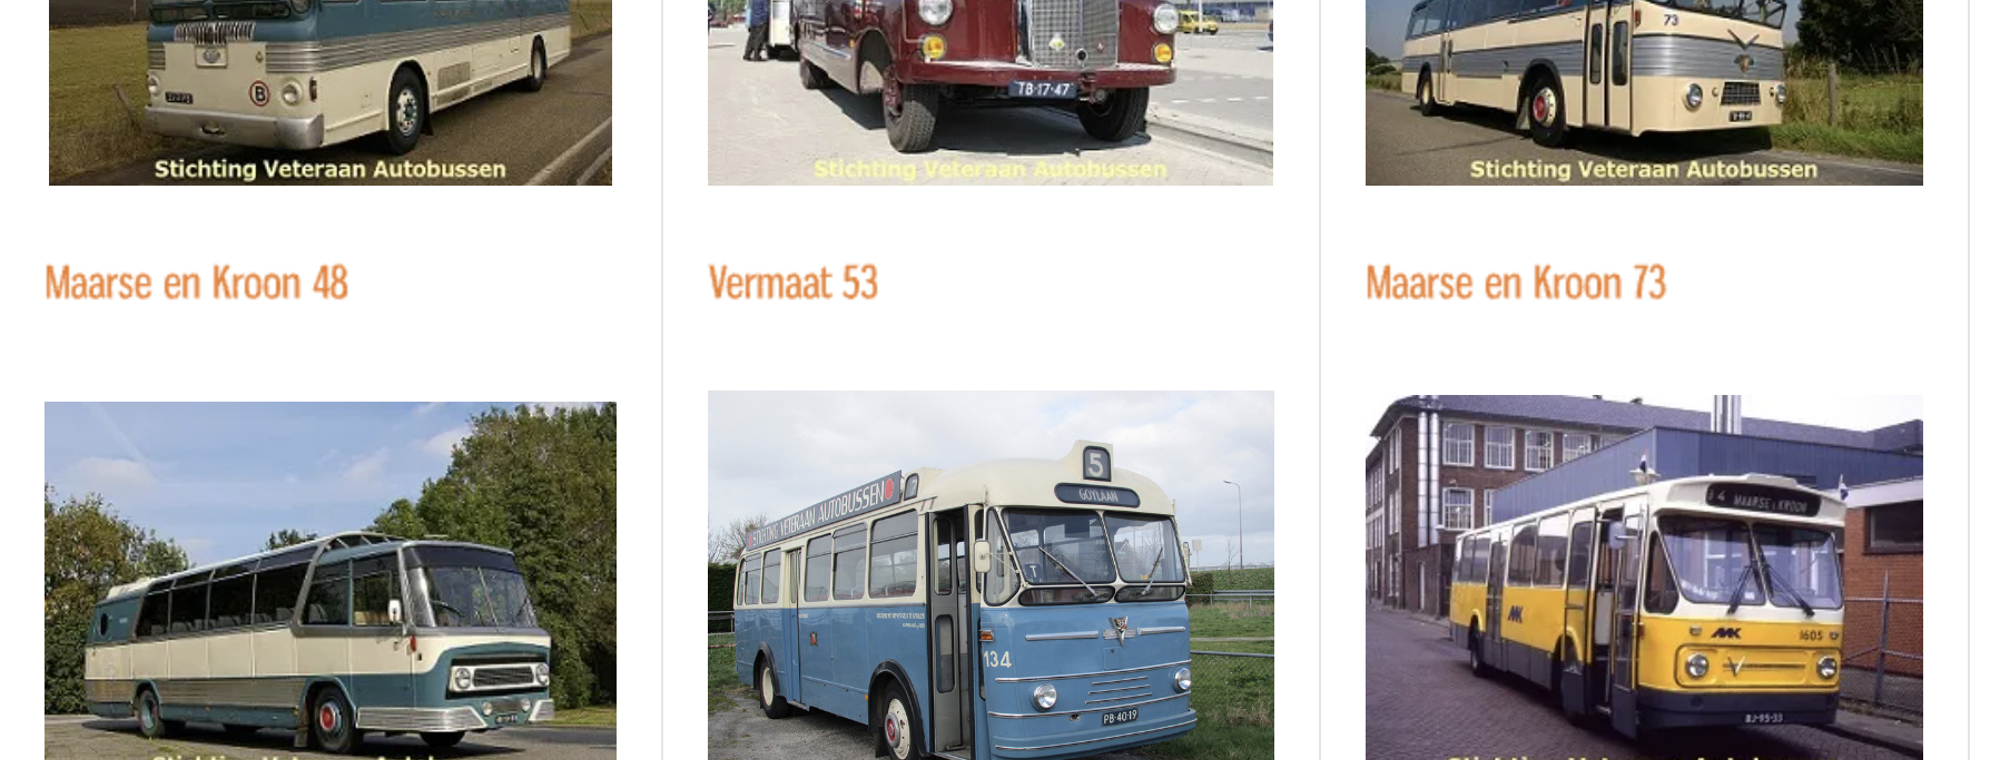 Stichting Veteranen Autobussen-photo